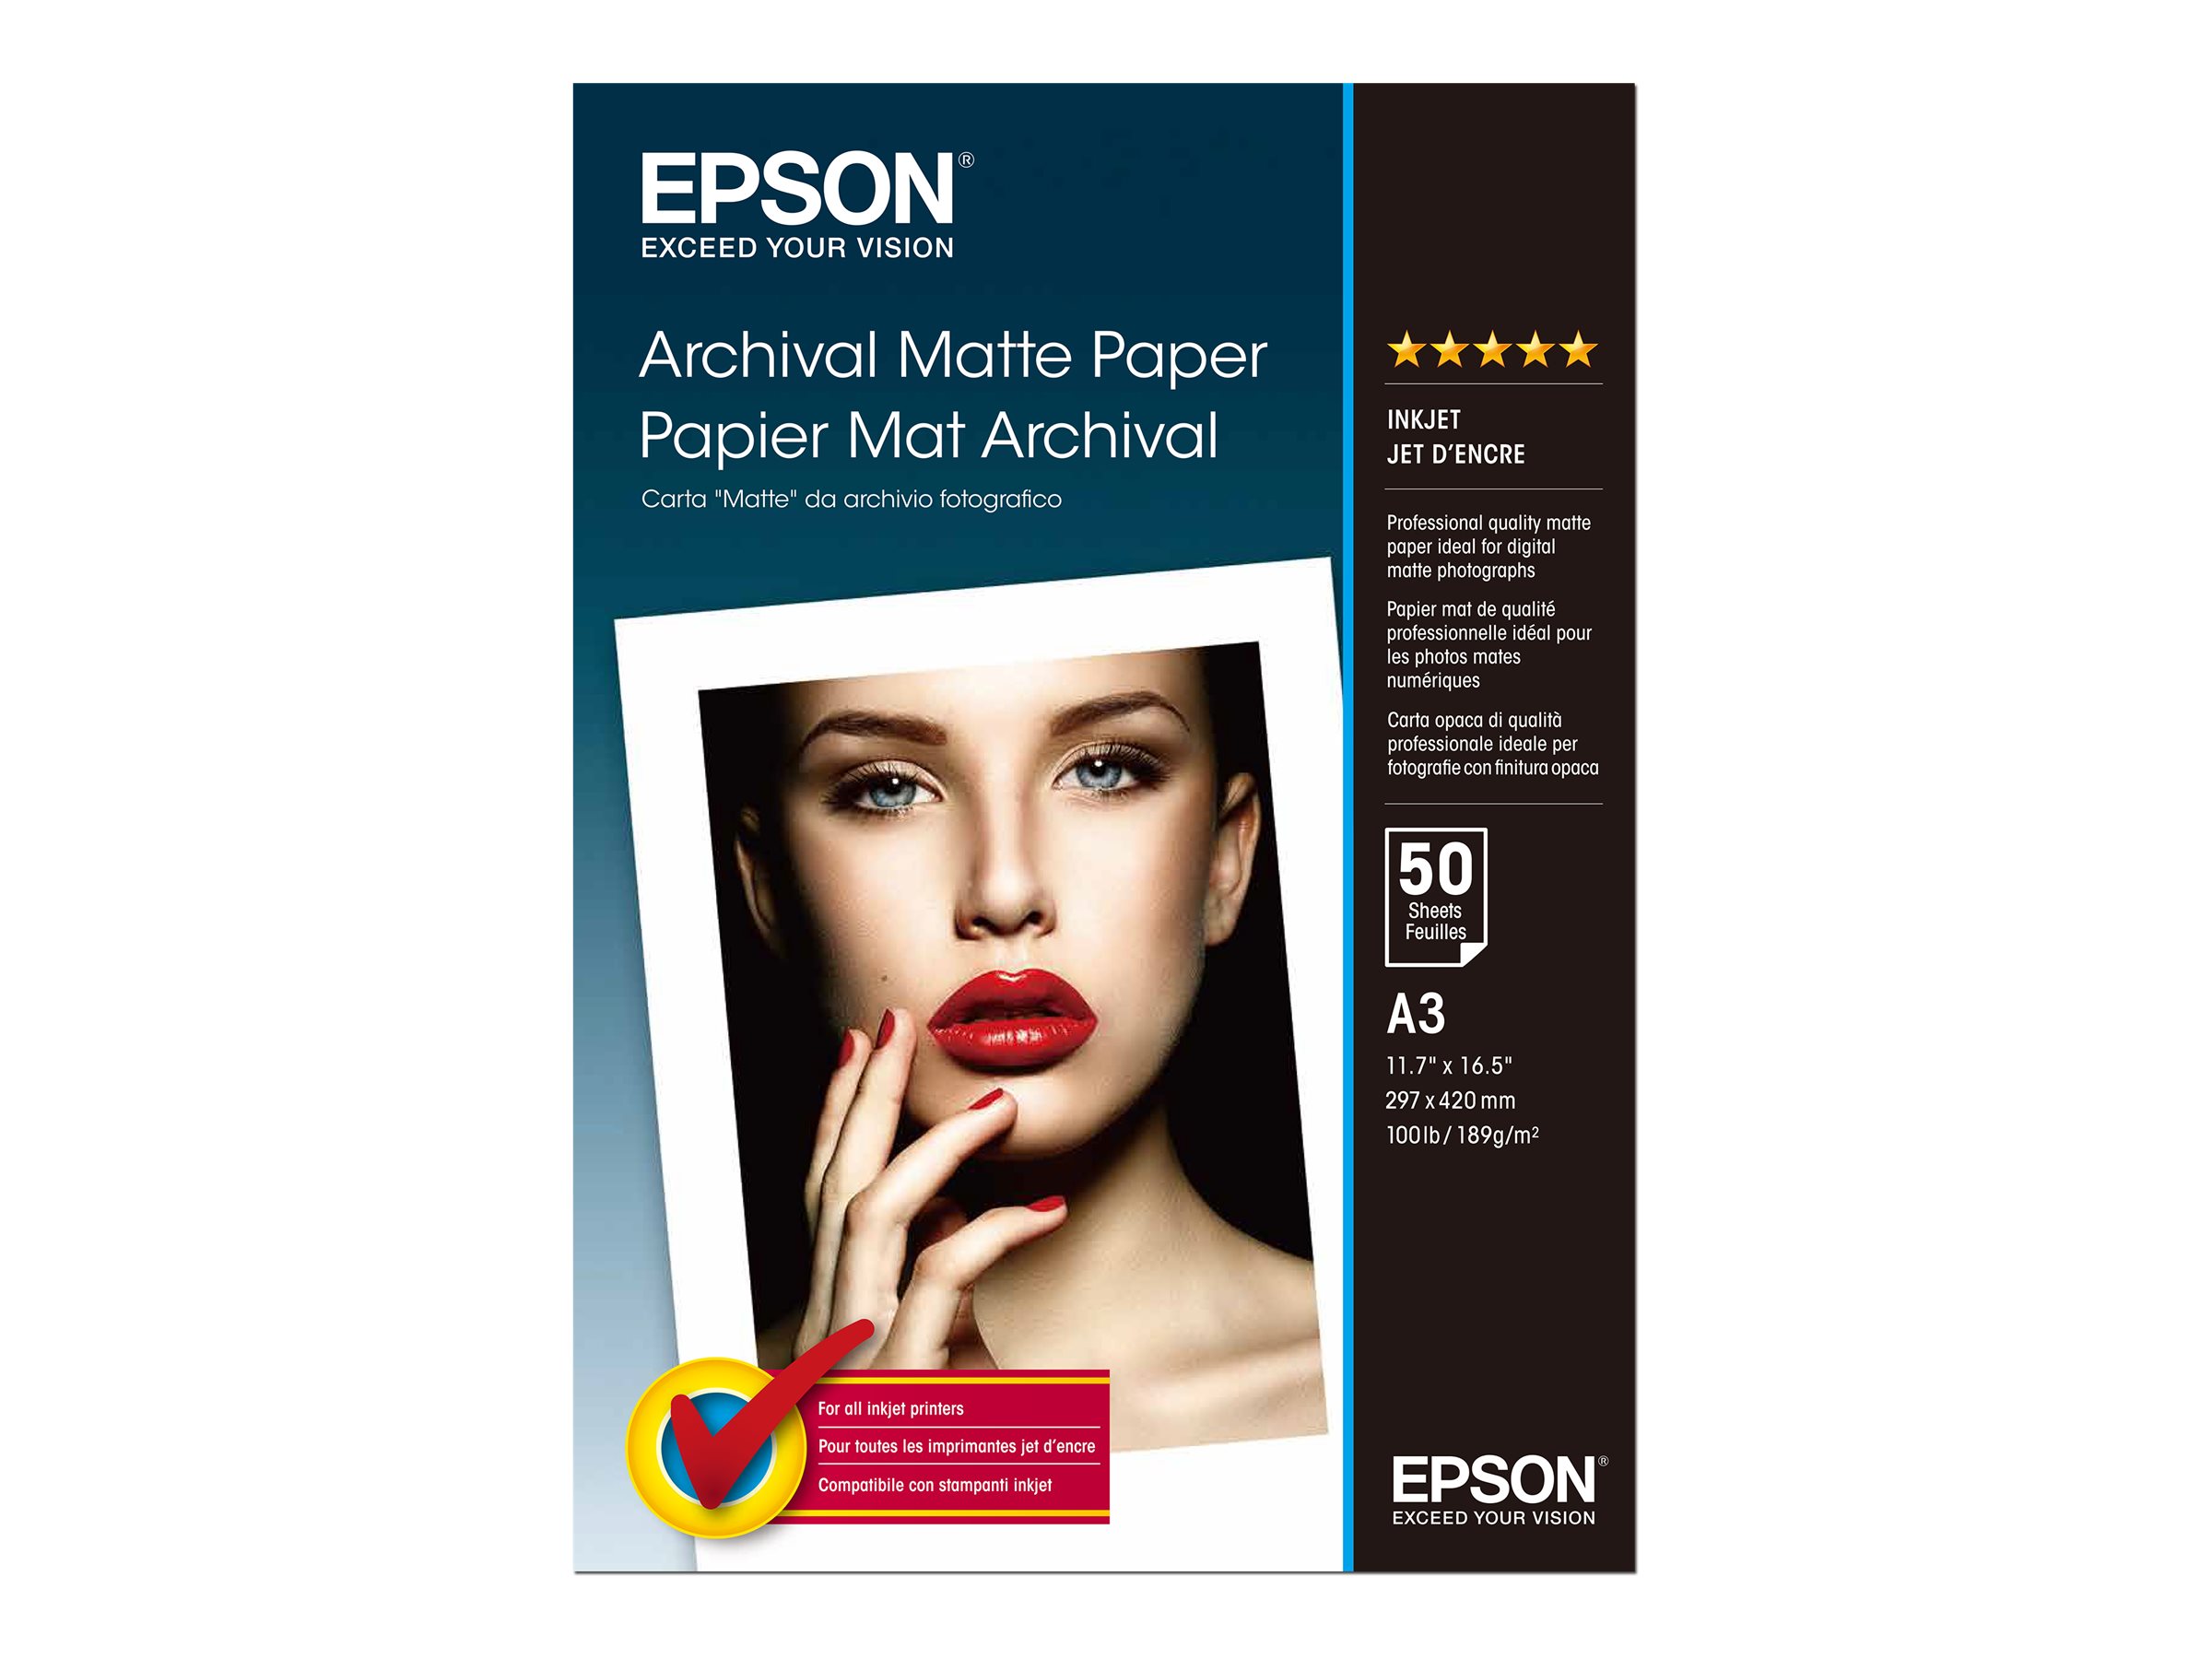 Epson Archival Matte Paper - Mat - A3 (297 x 420 mm) - 192 g/m² - 50 feuille(s) papier - pour SureColor SC-P700, P7500, P900, P9500, T2100, T3100, T3400, T3405, T5100, T5400, T5405 - C13S041344 - support spécial